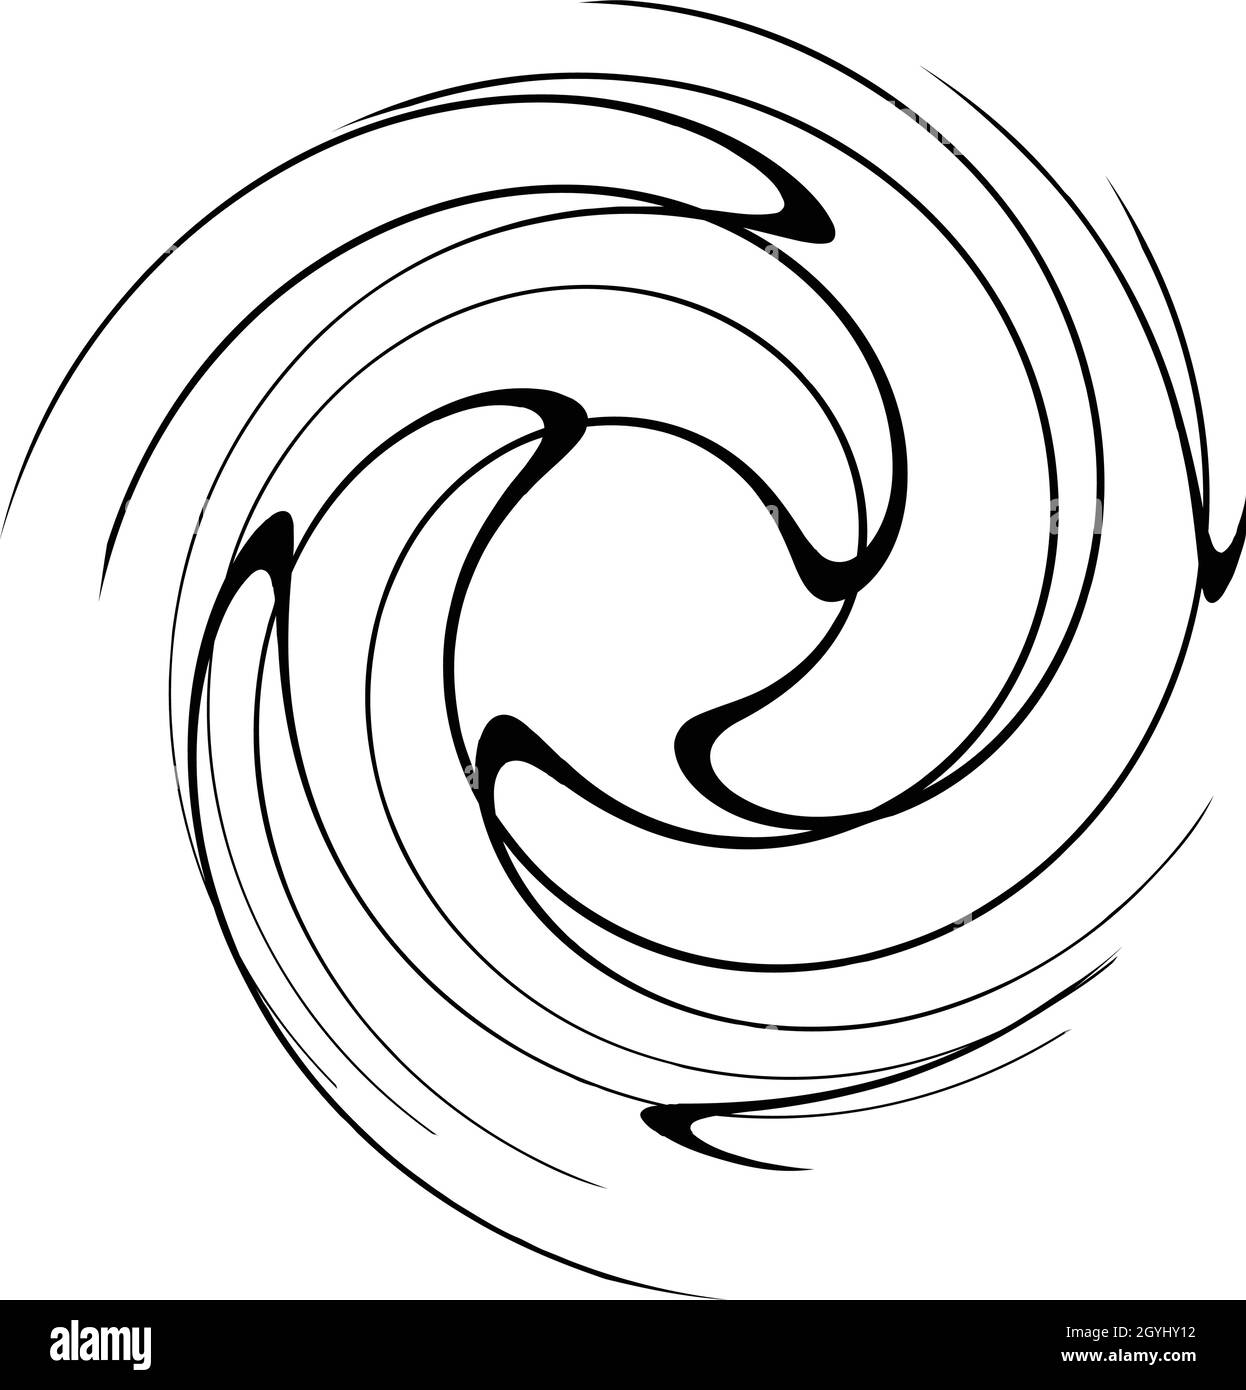 Spirale, tourbillon, tourbillon, élément de volute.Bain bouillonnant, effet  tourbillon.Lignes circulaires et radiales avec rotation - illustrations  vectorielles de stock, graphiques clip-art Image Vectorielle Stock - Alamy